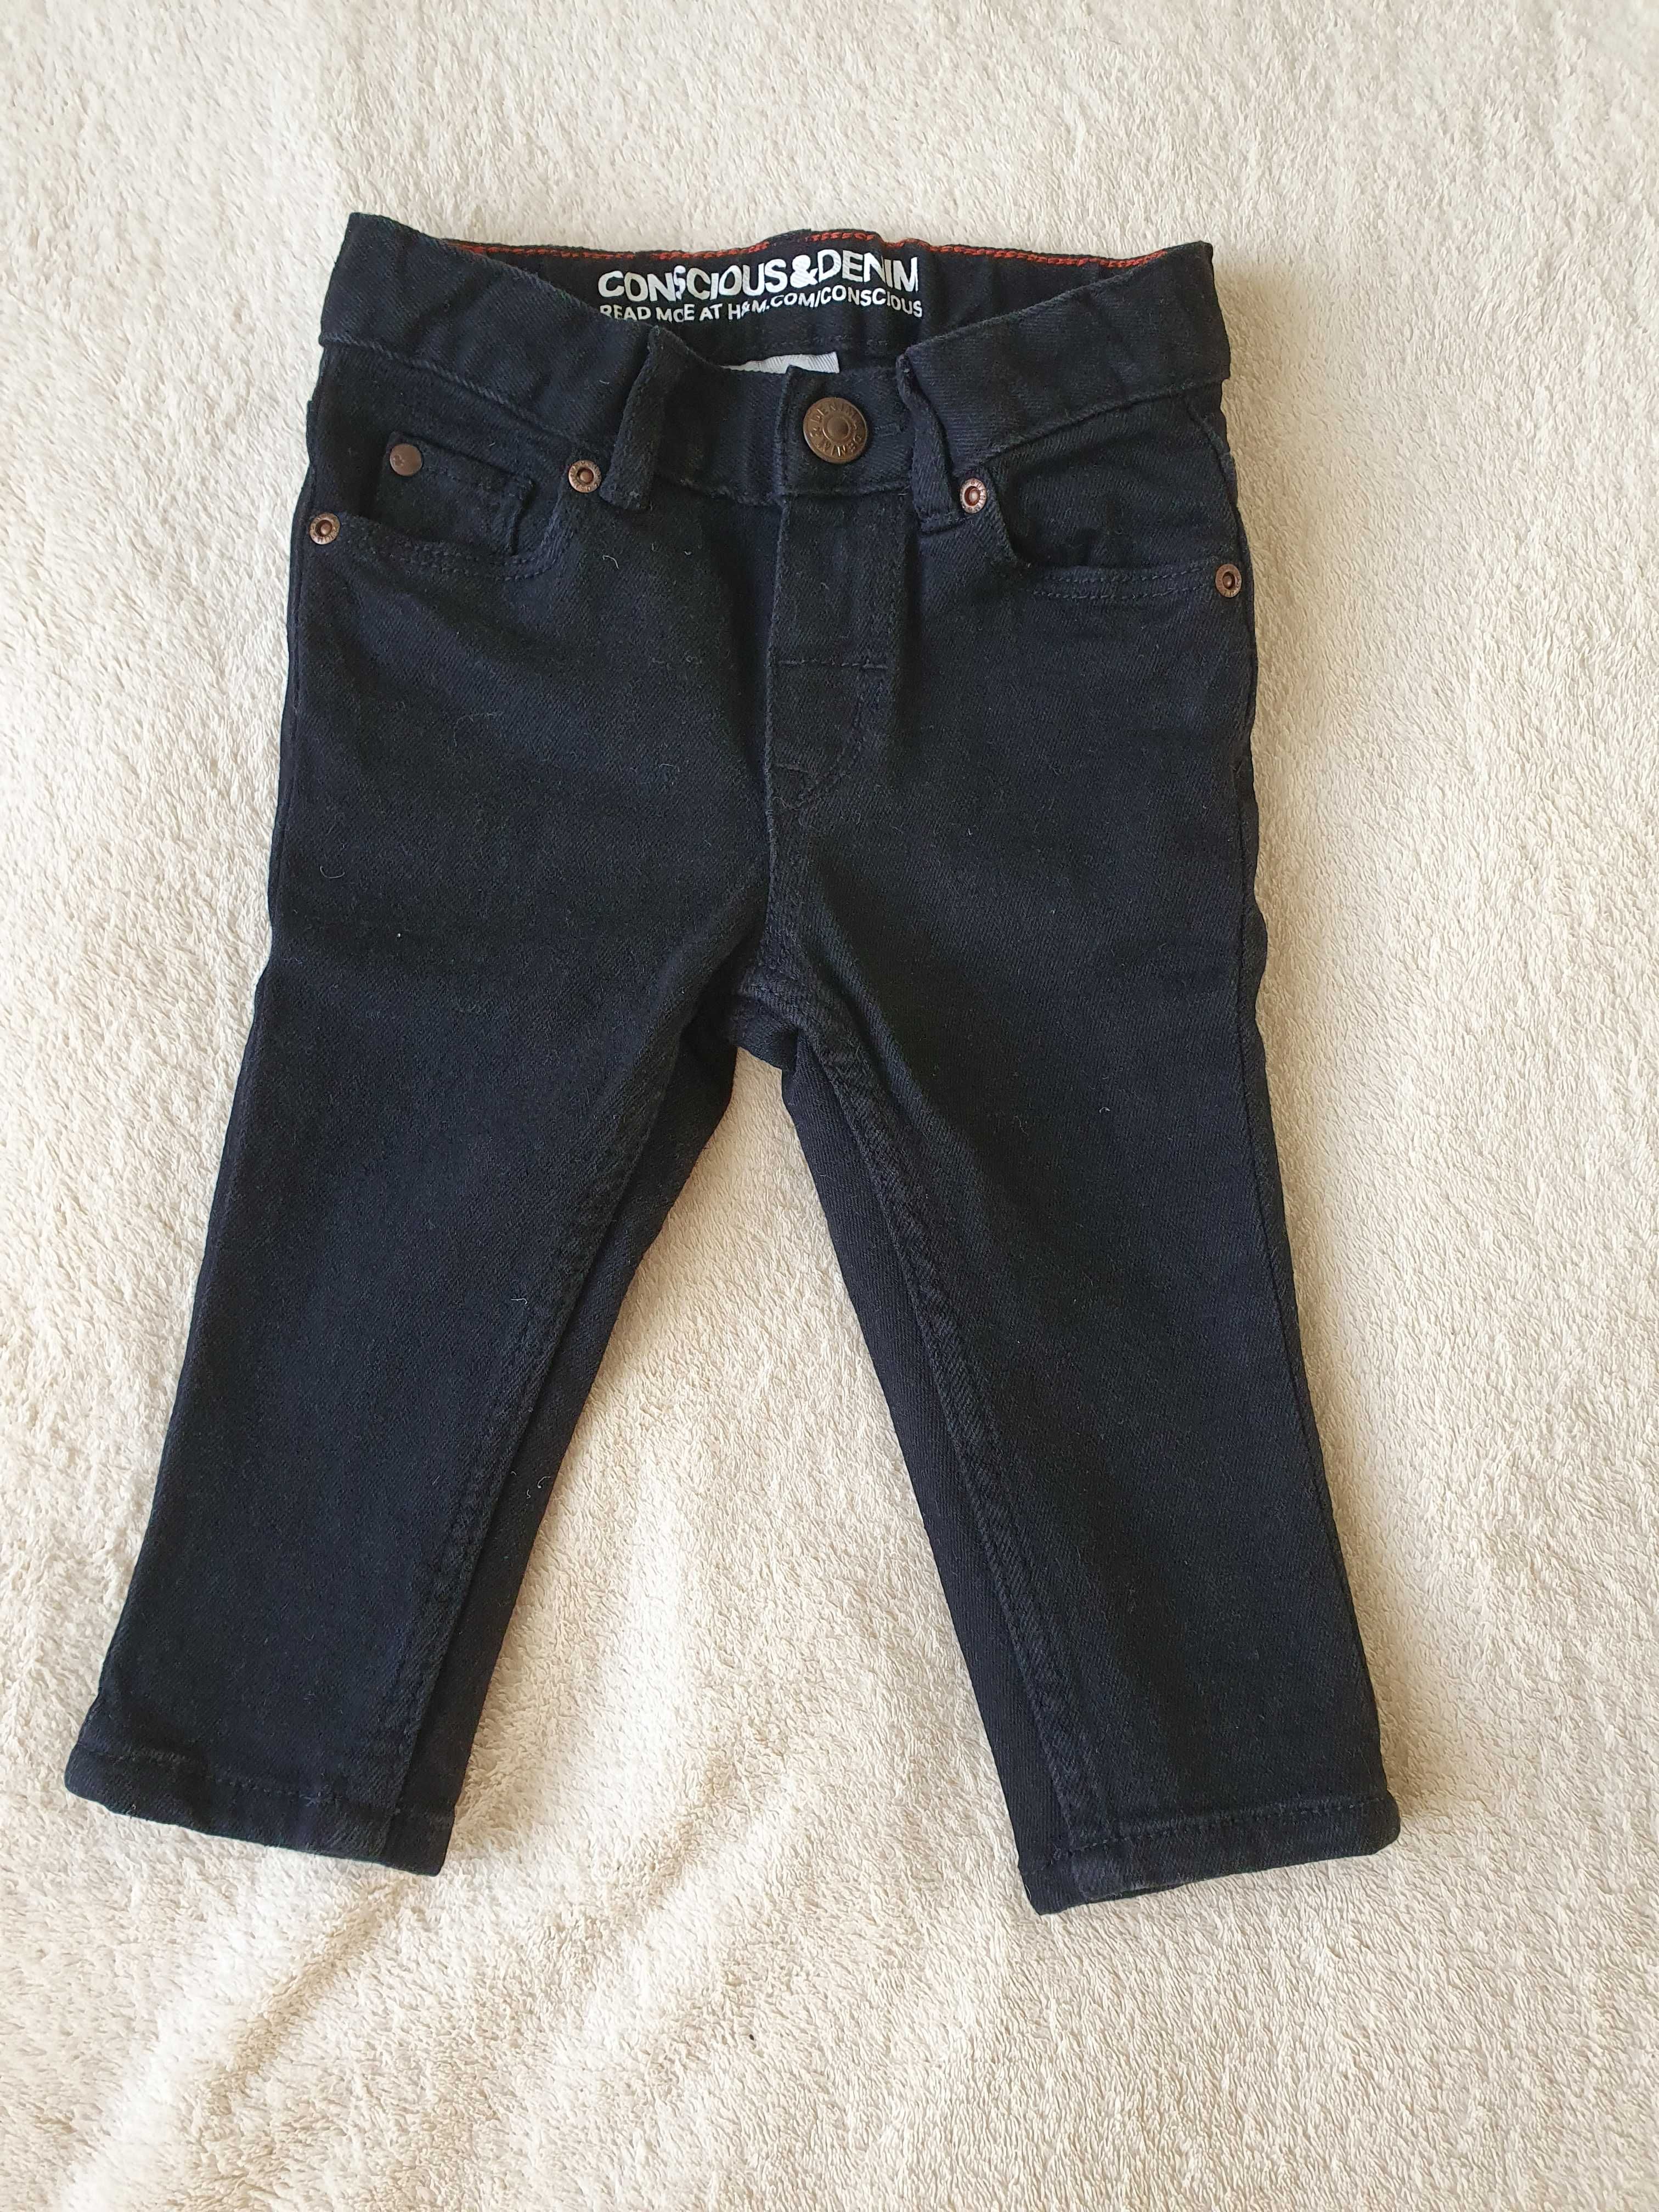 Дитячi джинси h&m, рубашка zara